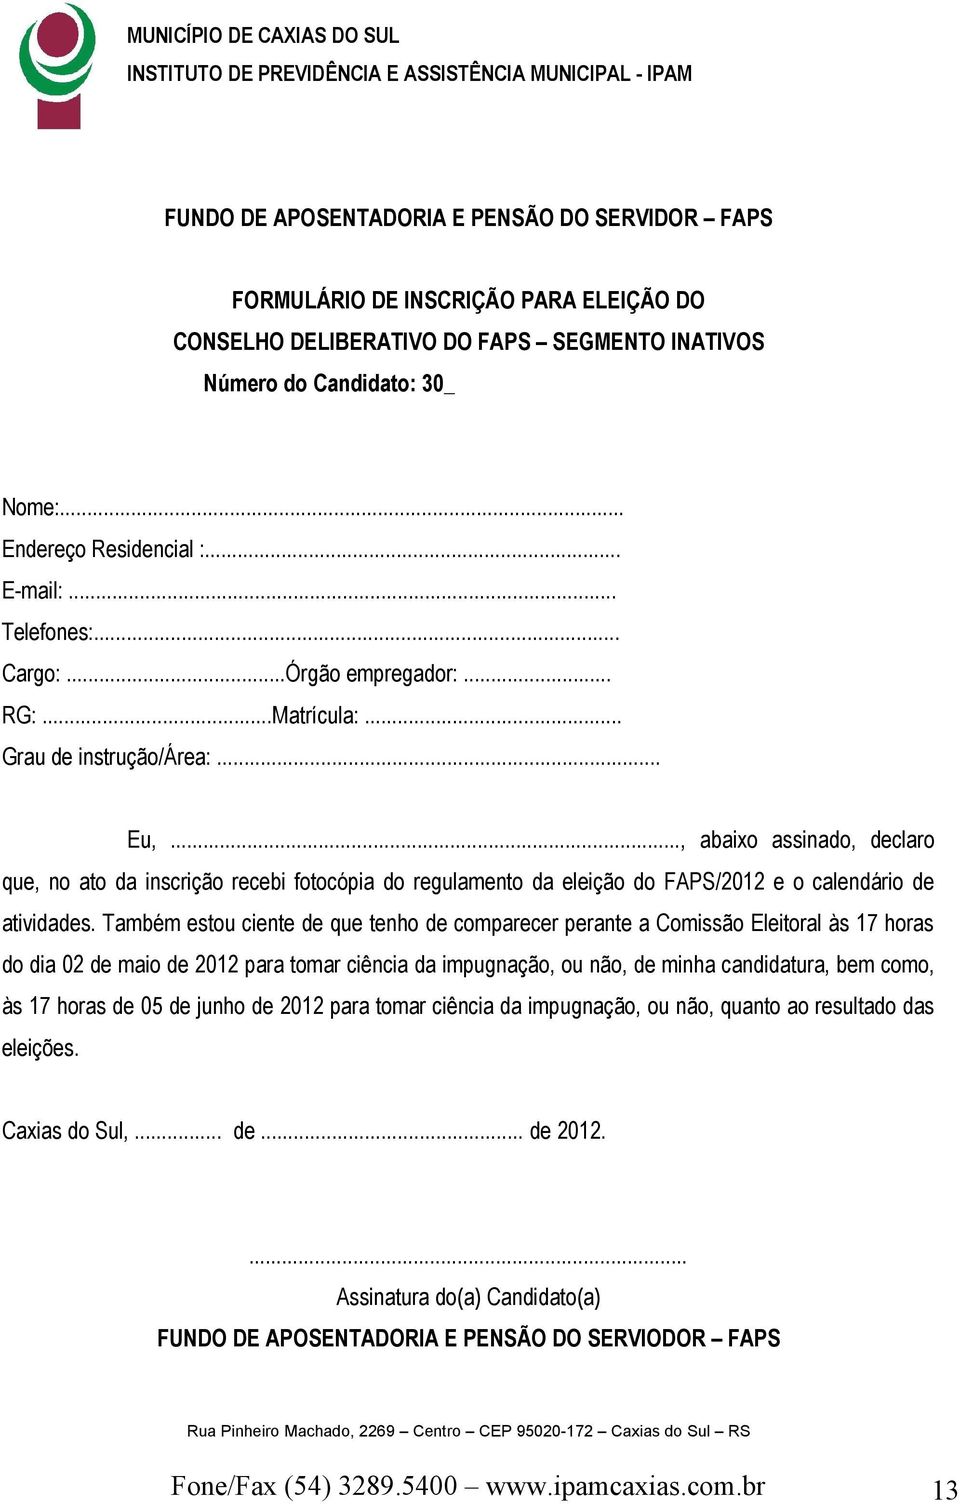 .., abaixo assinado, declaro que, no ato da inscrição recebi fotocópia do regulamento da eleição do FAPS/2012 e o calendário de atividades.